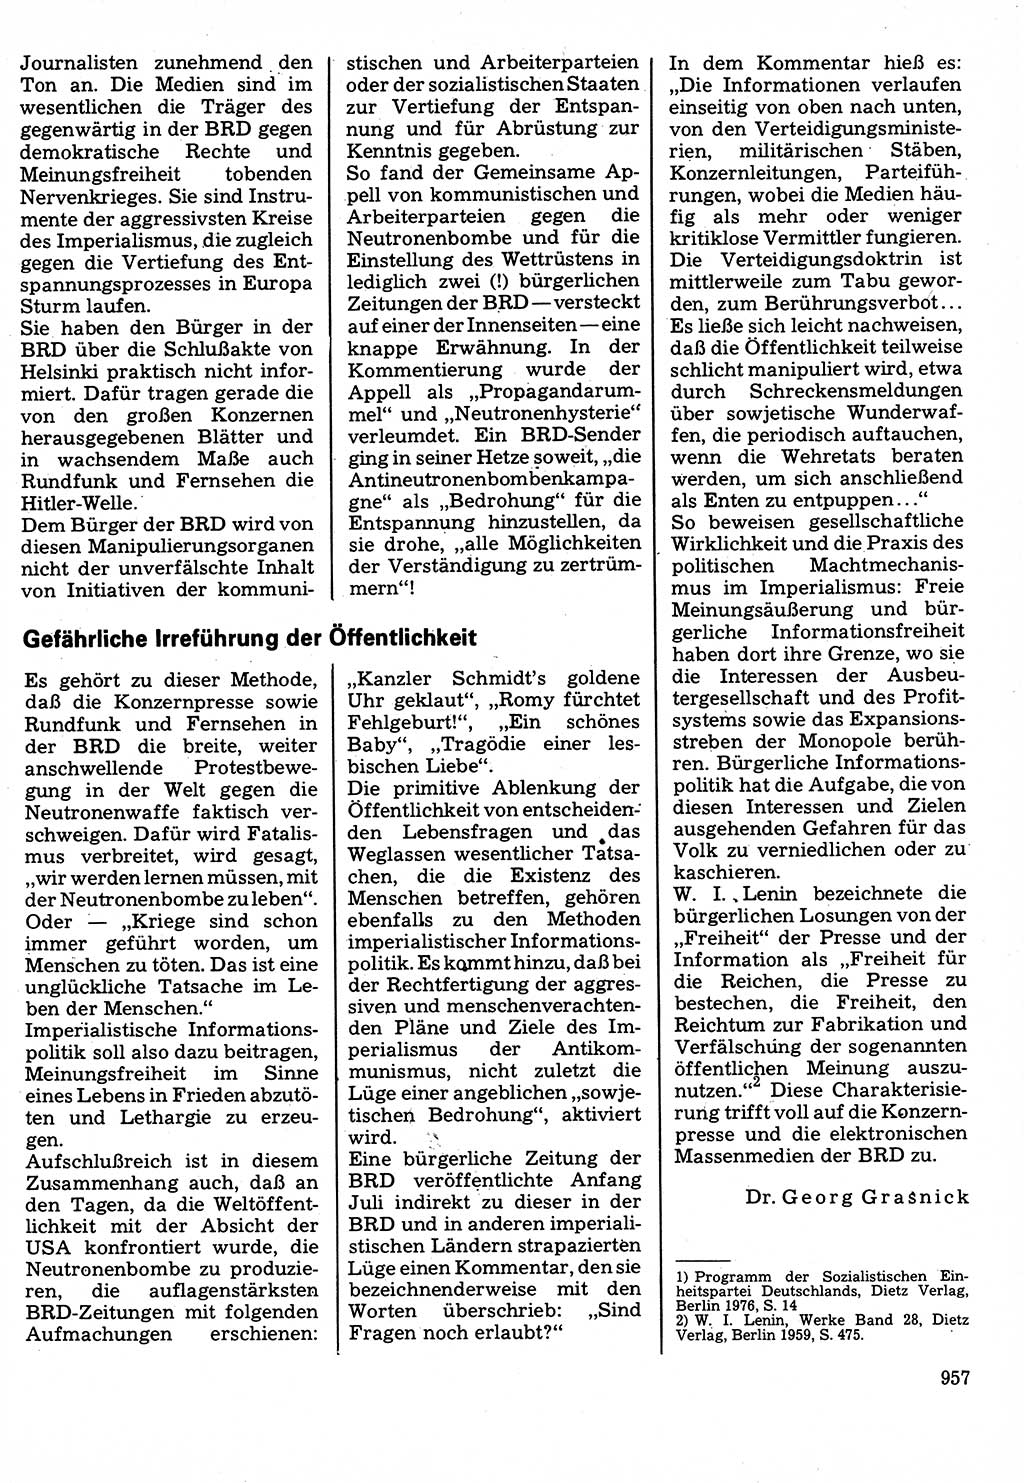 Neuer Weg (NW), Organ des Zentralkomitees (ZK) der SED (Sozialistische Einheitspartei Deutschlands) für Fragen des Parteilebens, 32. Jahrgang [Deutsche Demokratische Republik (DDR)] 1977, Seite 957 (NW ZK SED DDR 1977, S. 957)